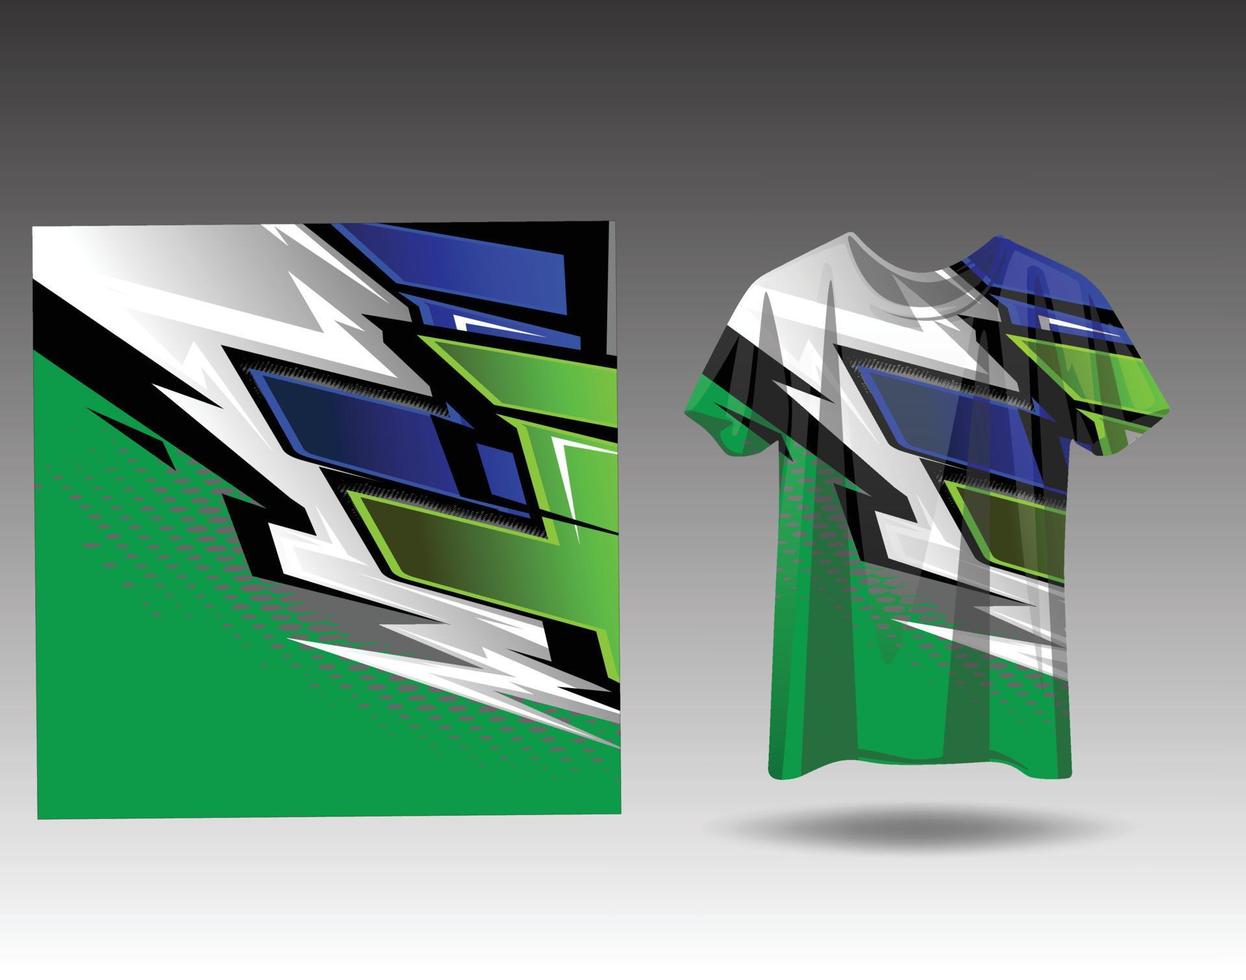 tshirt sporter design för tävlings, jersey, cykling, fotboll, gaming vektor